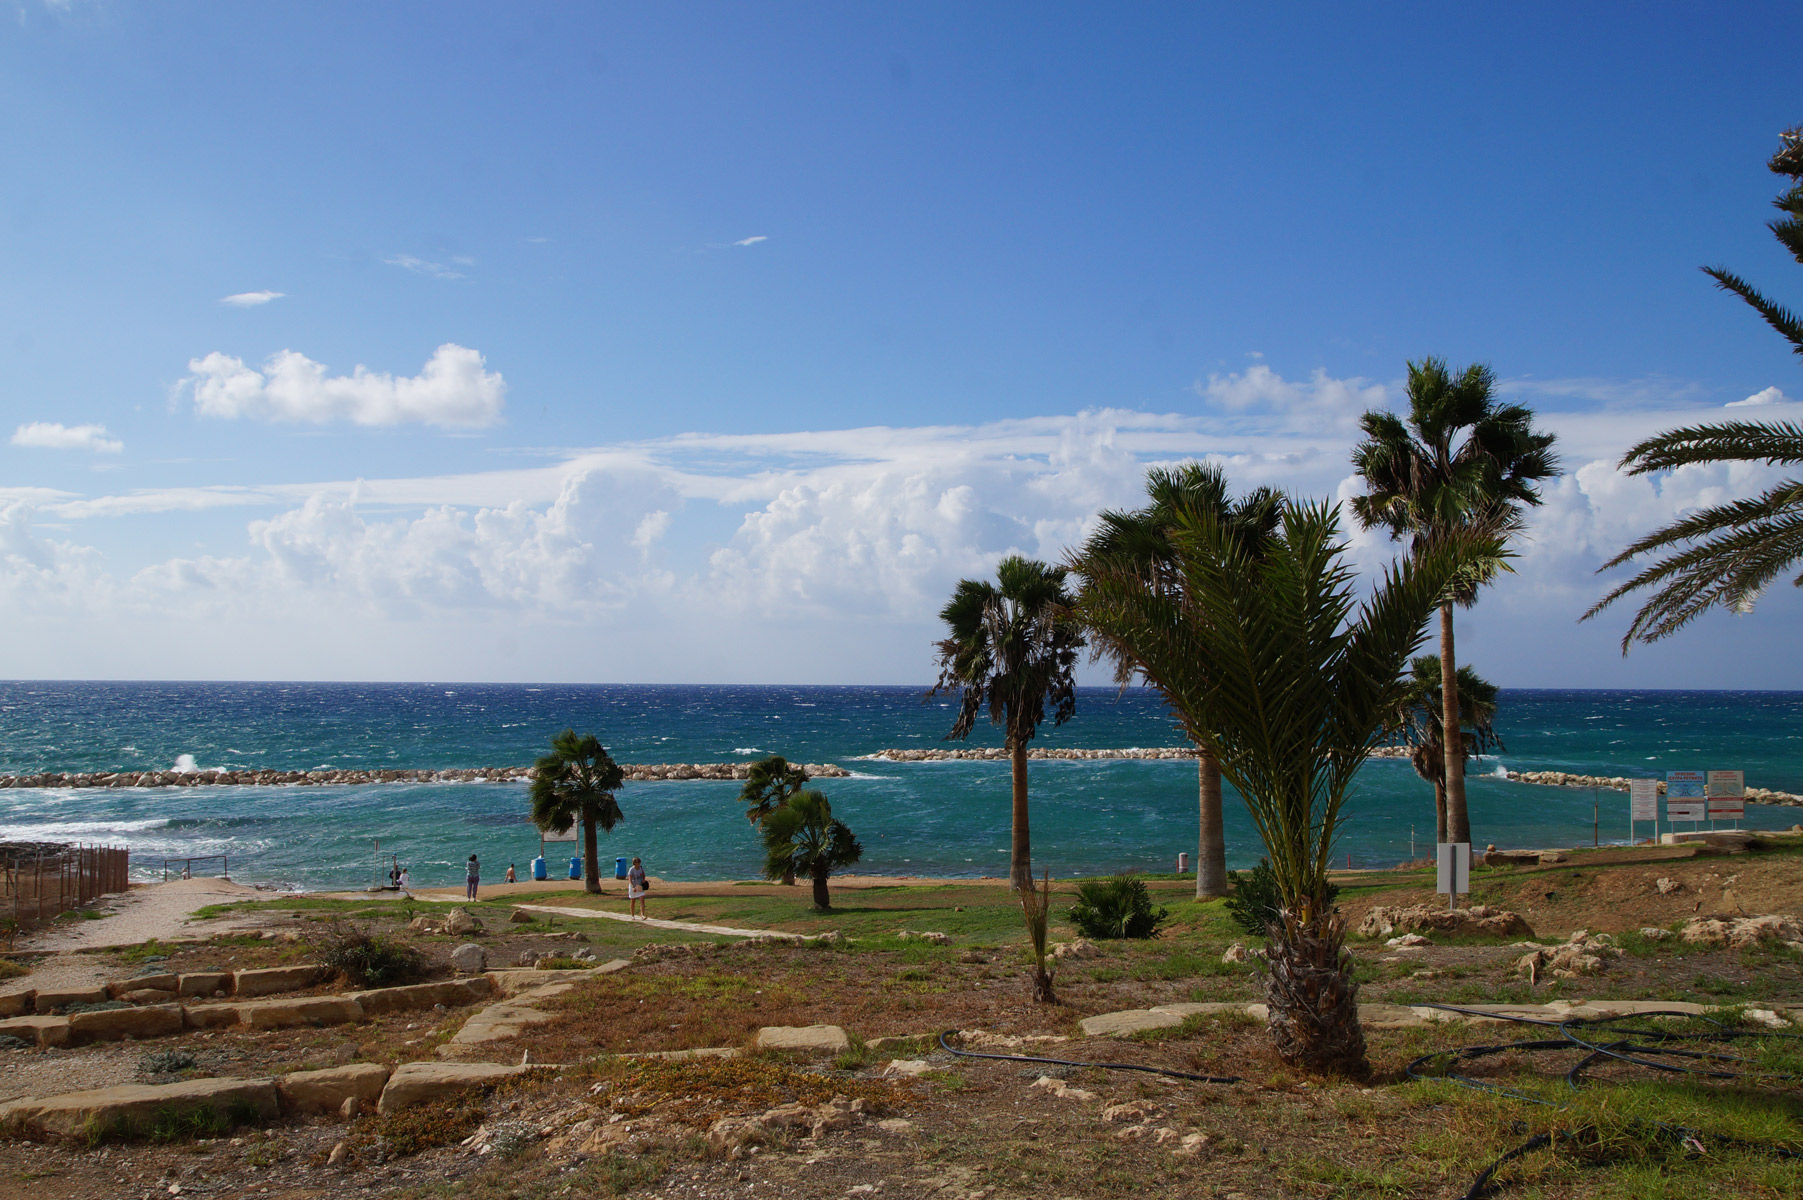 Спуск к пляжу отеля Венус Бич. Отсюда начинается многокилометровый променад. 
Пафос, Кипр, осень 2018